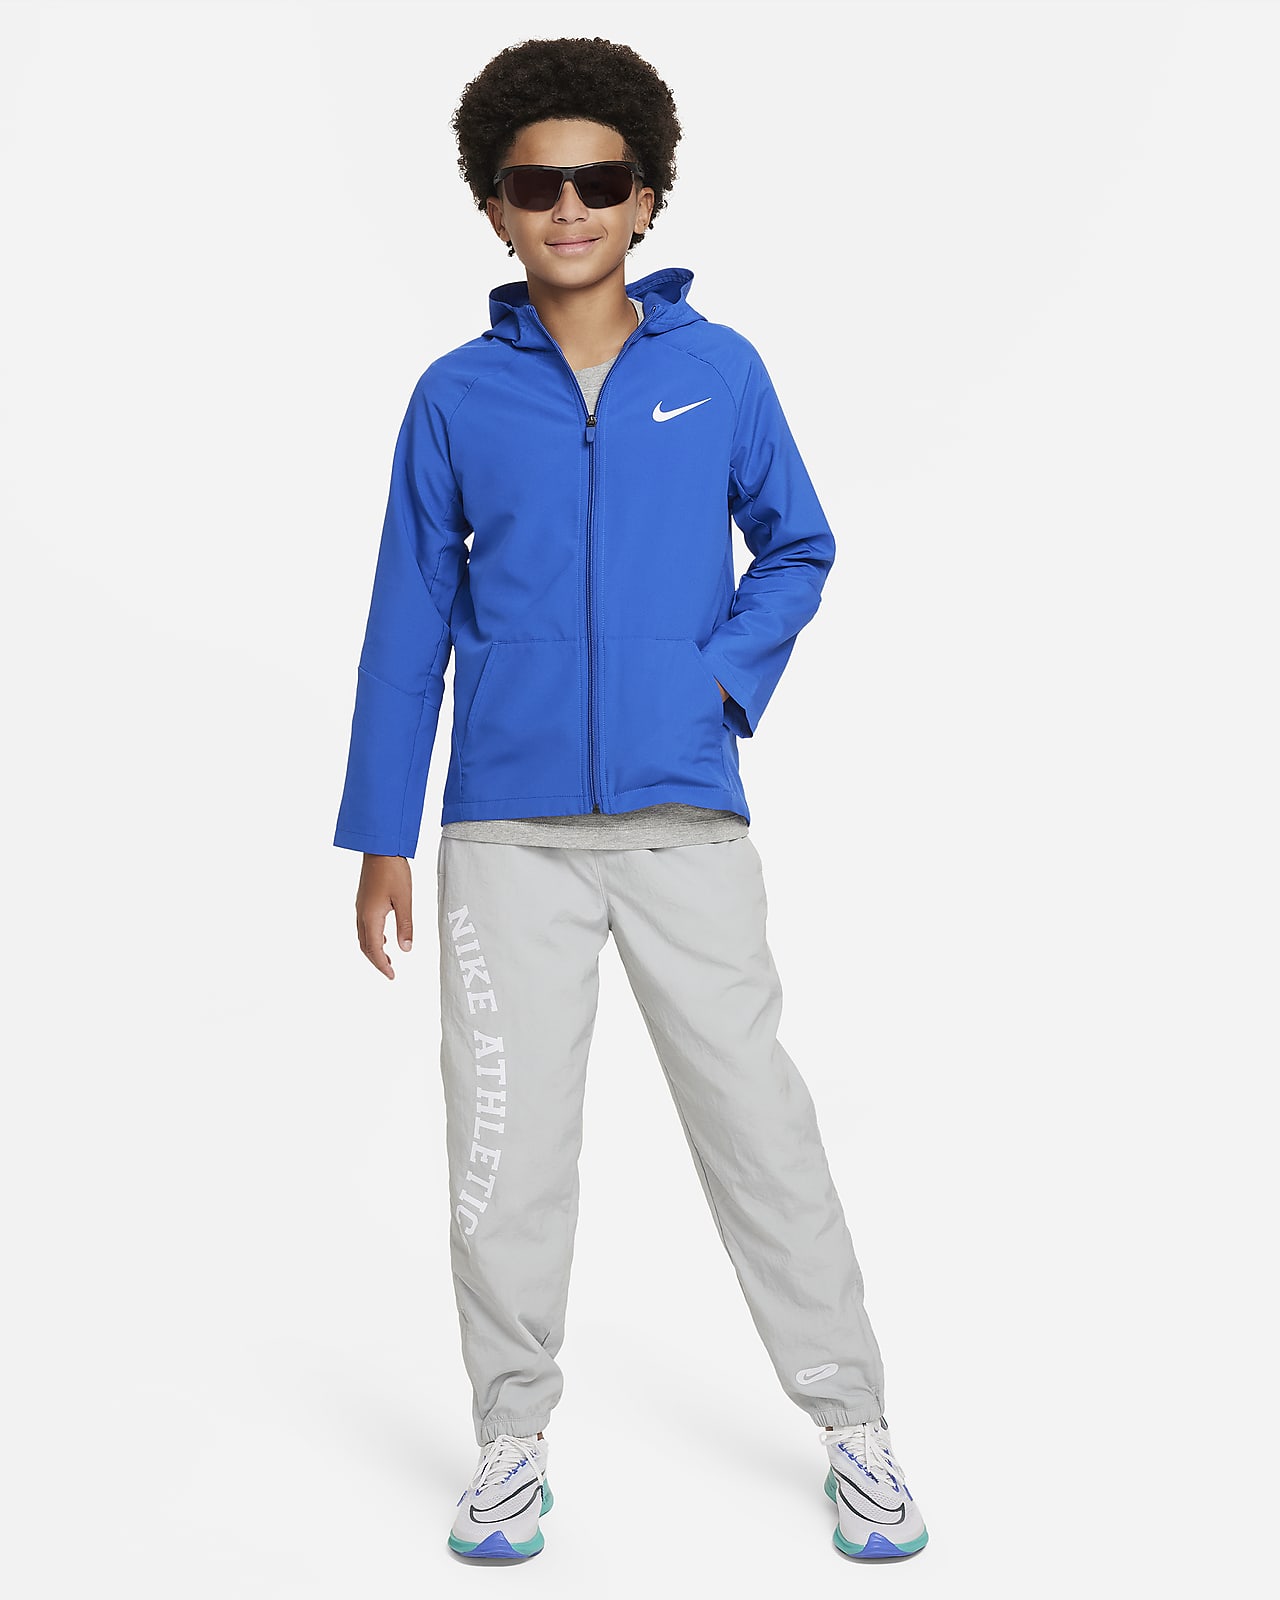 ナイキ Dri-FIT ジュニア (ボーイズ) ウーブン トレーニングジャケット